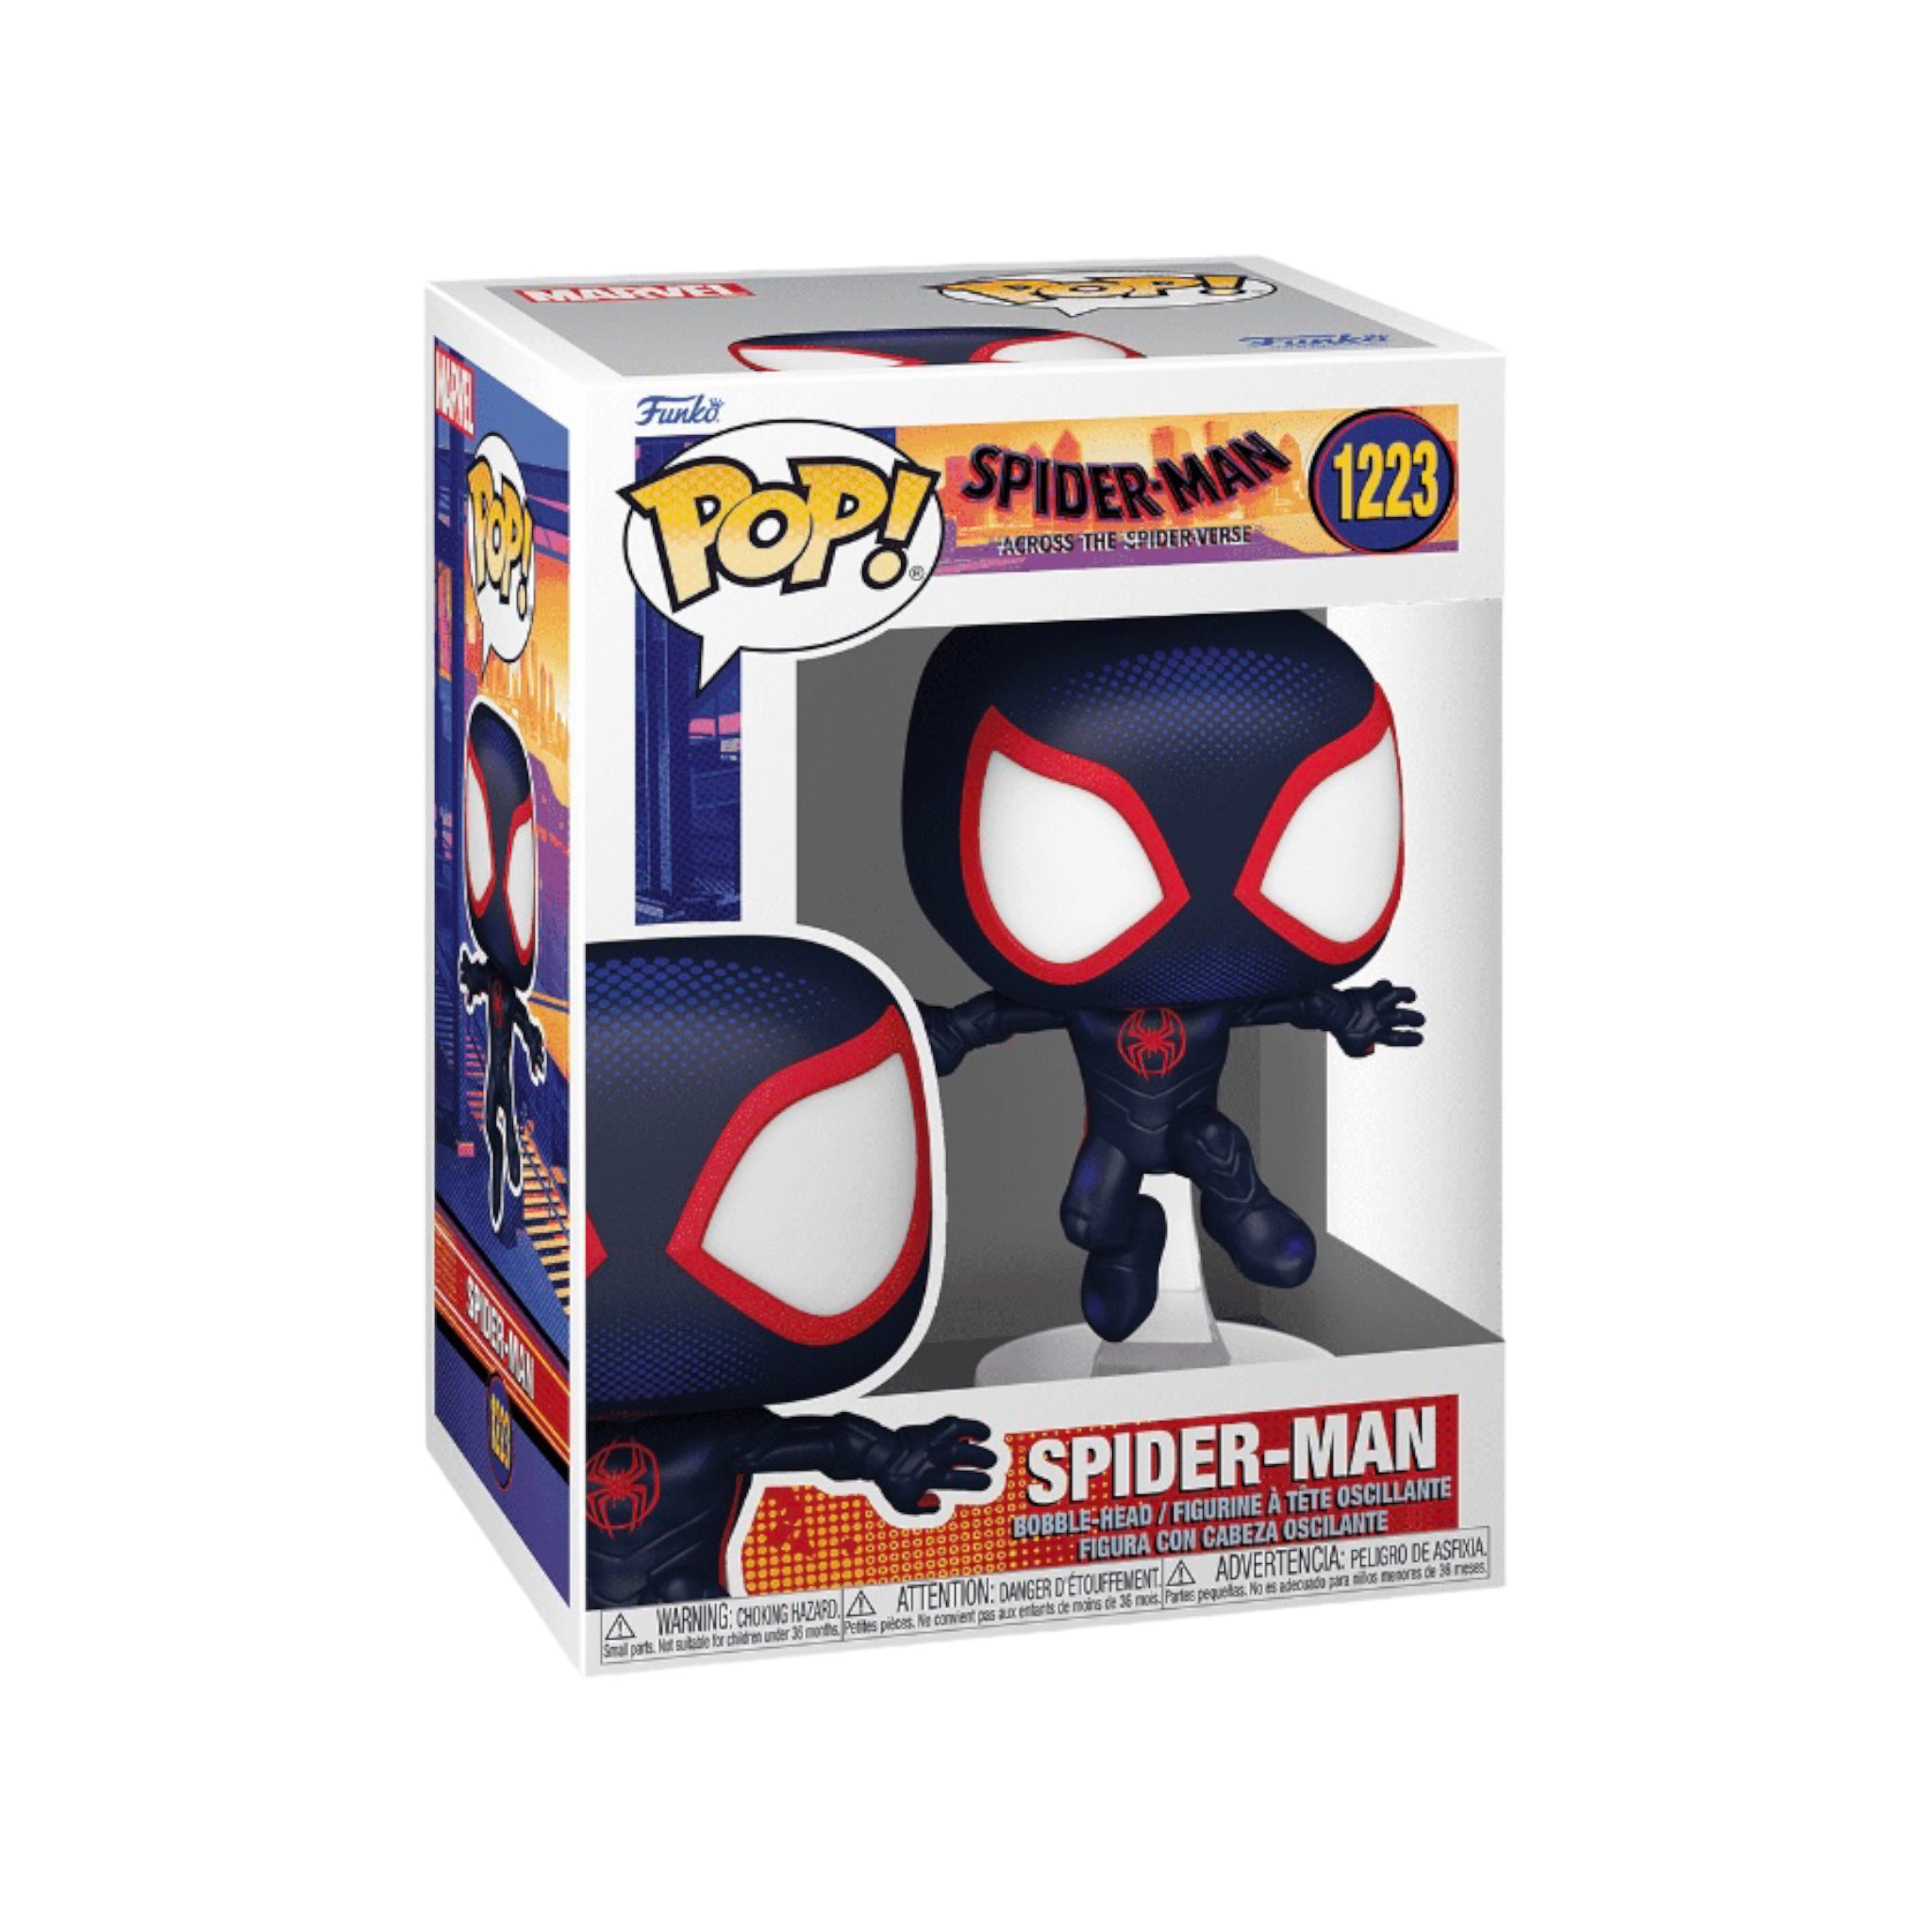 Spider-Man #1223 Funko Pop! - Spider-Man Across The Spider-verse